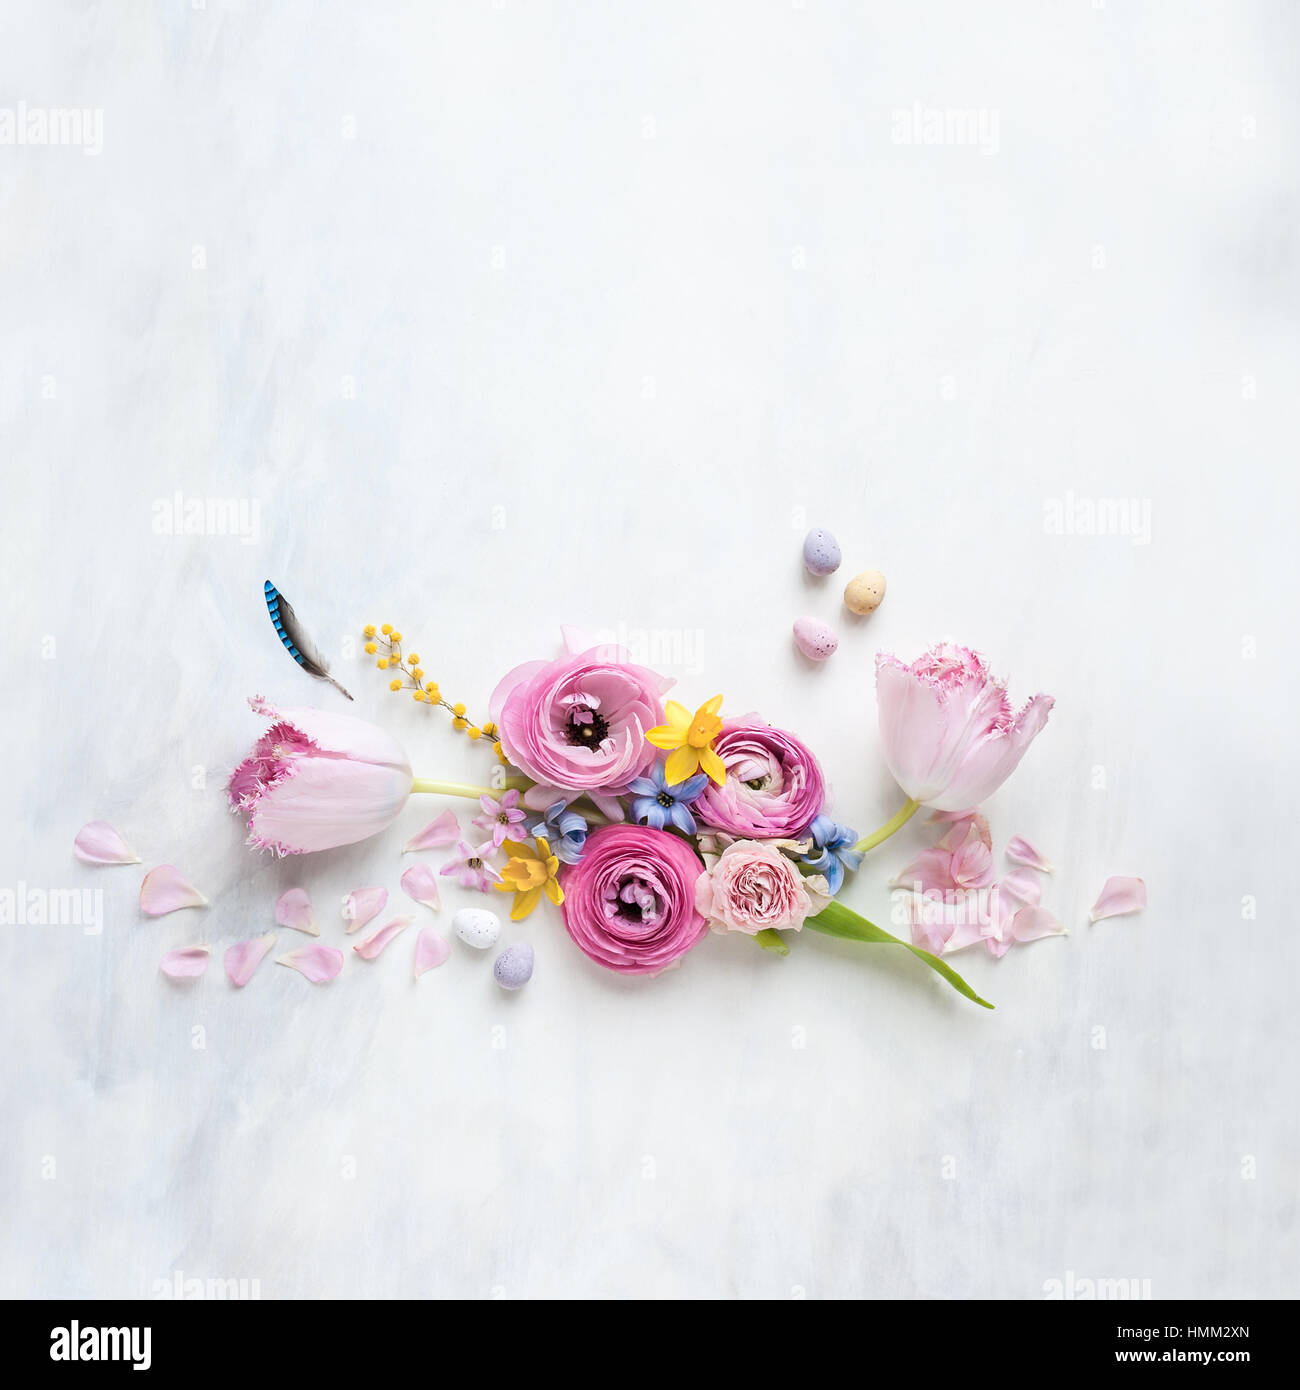 Aún con estilo de vida laical plana con flores de primavera, pluma y mini huevos dispuestos en una fila sobre un telón de fondo con textura blanco y gris. Foto de stock